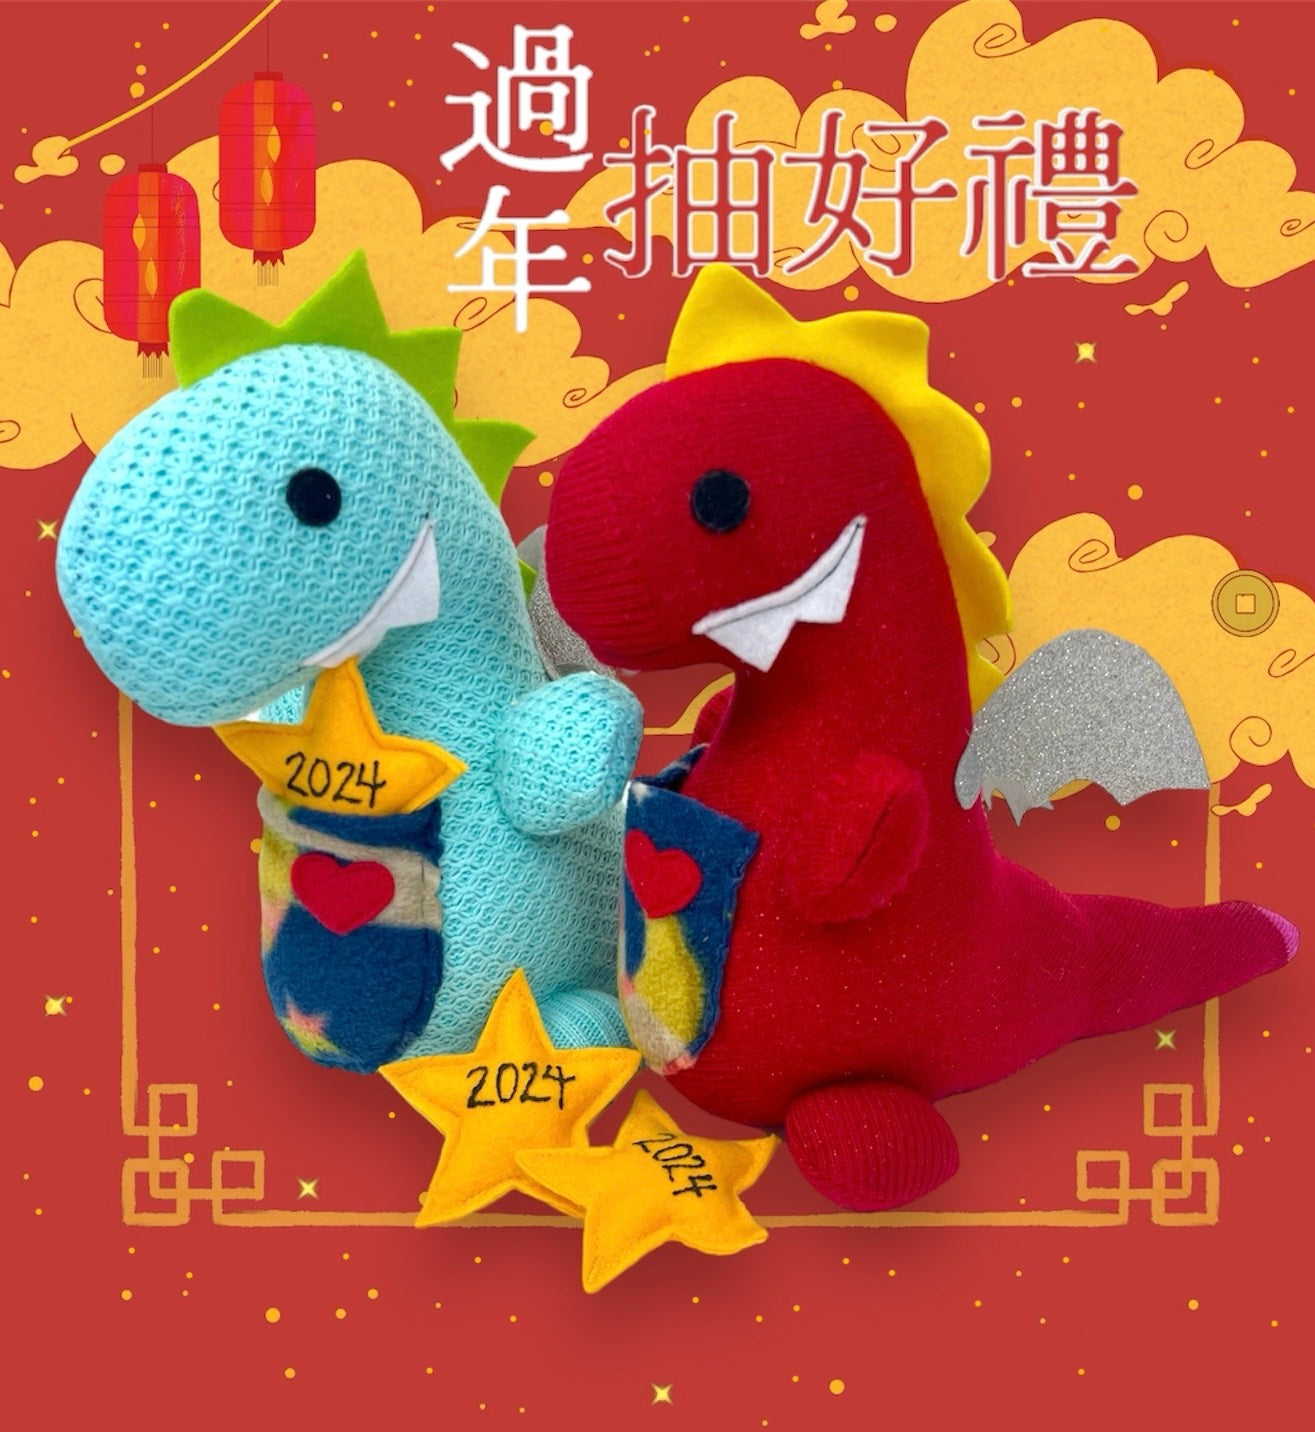 Dragon stuffed animal plushie